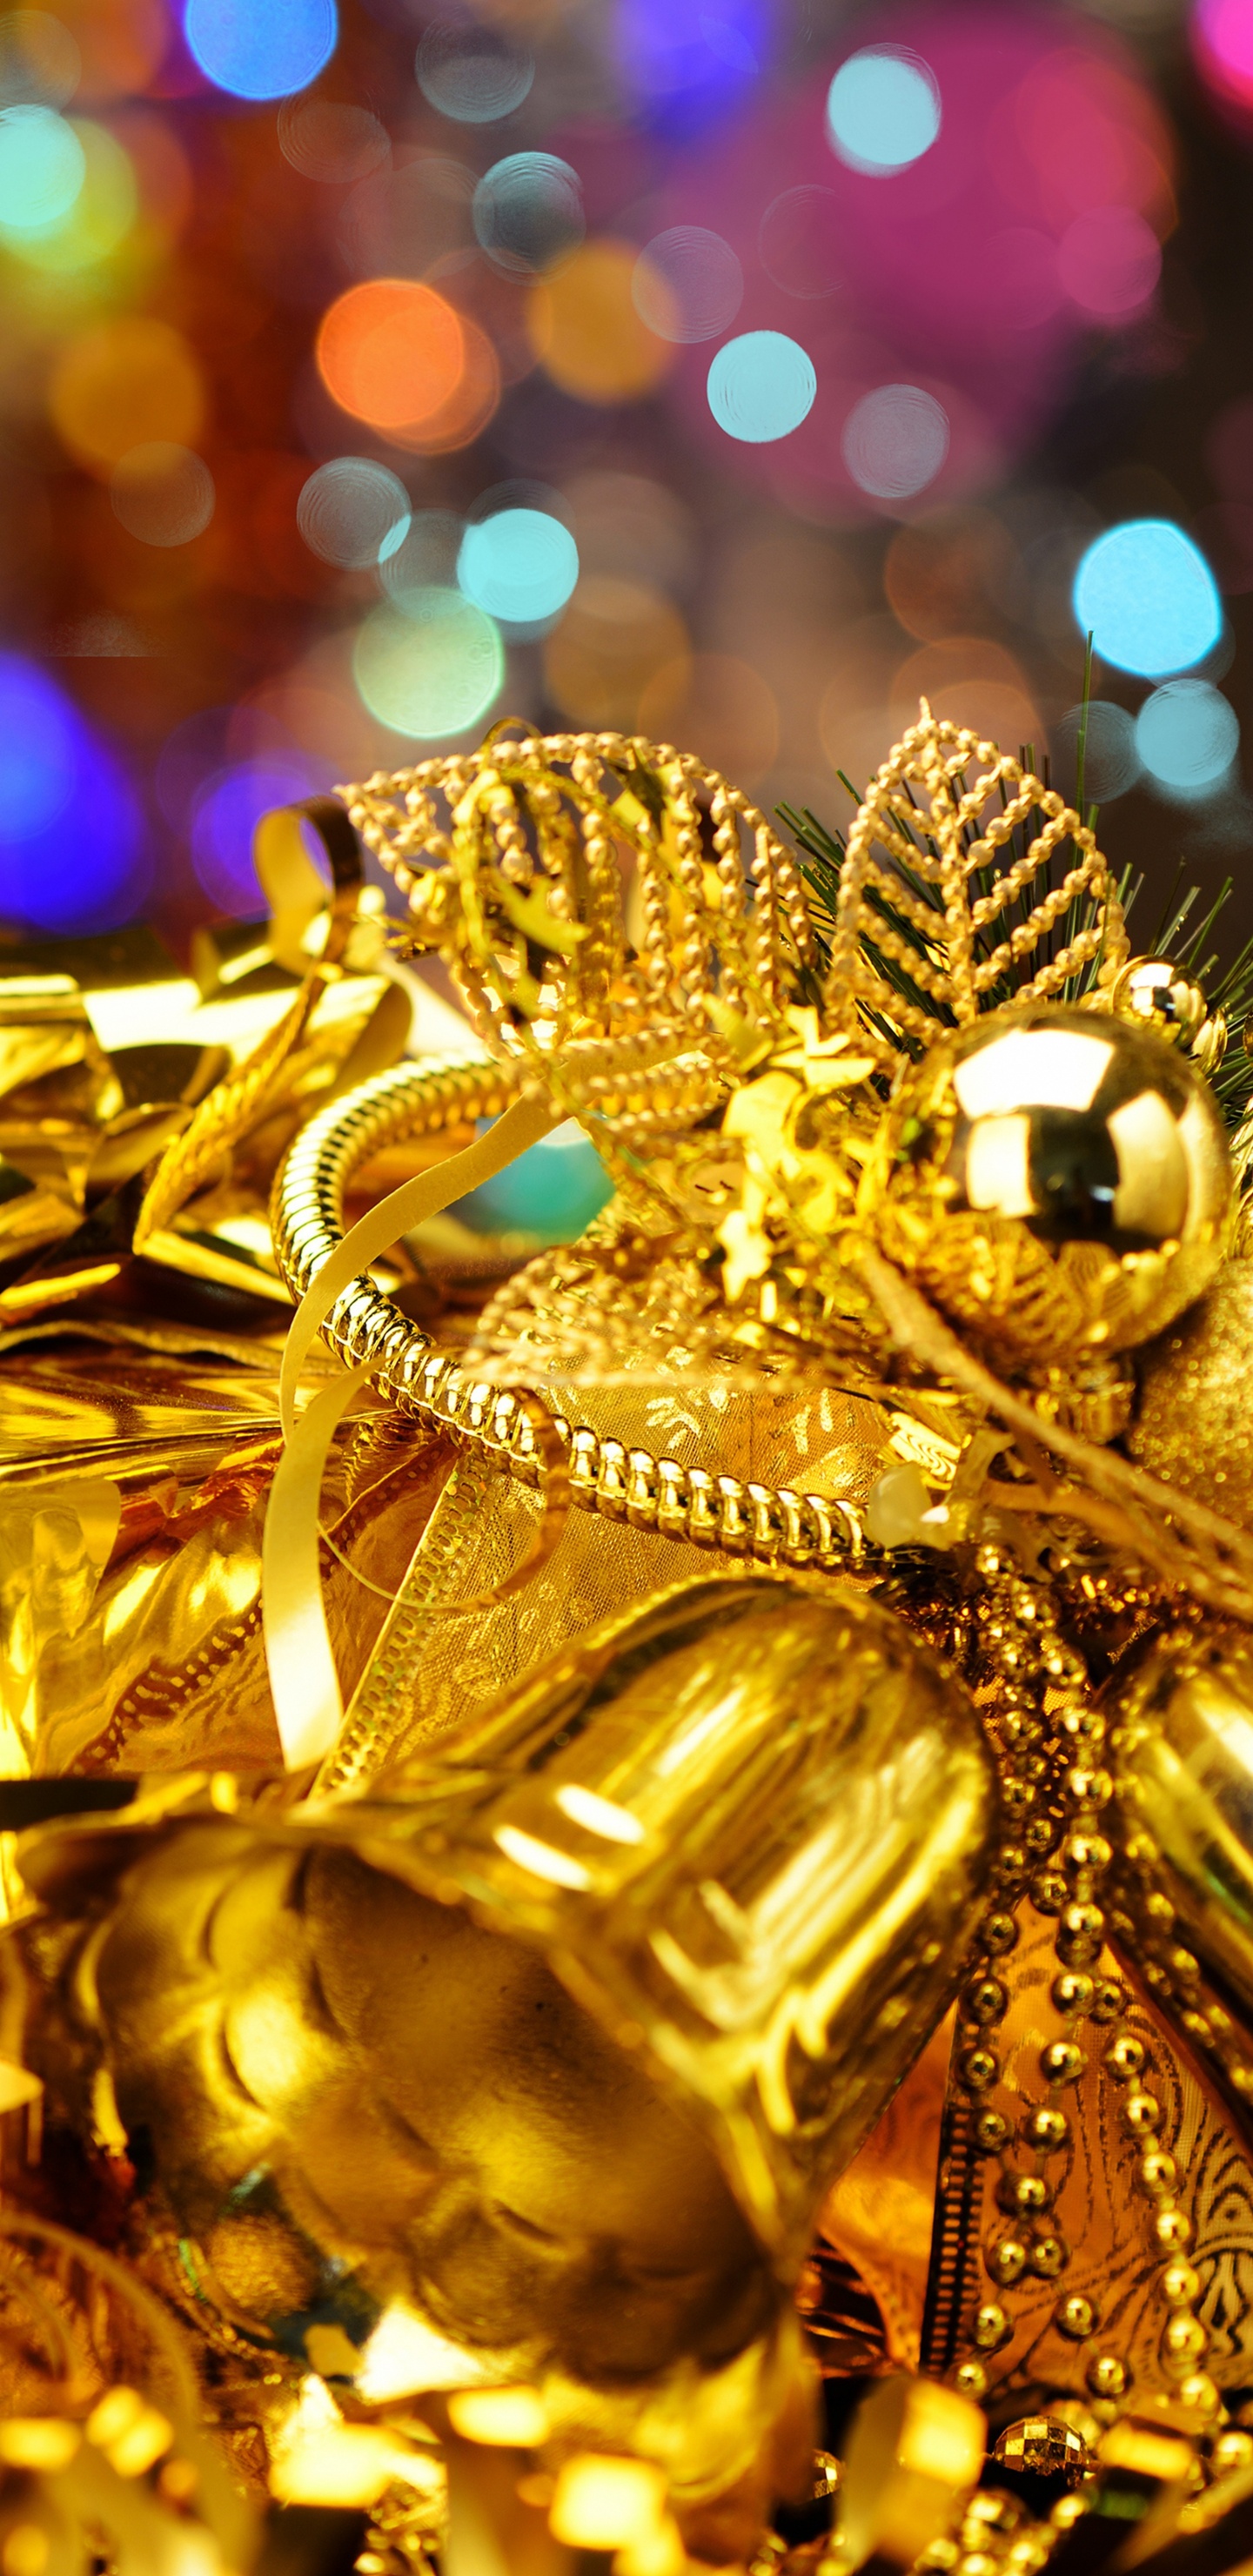 Gold, Weihnachtsdekoration, Veranstaltung, Tradition, Festival. Wallpaper in 1440x2960 Resolution